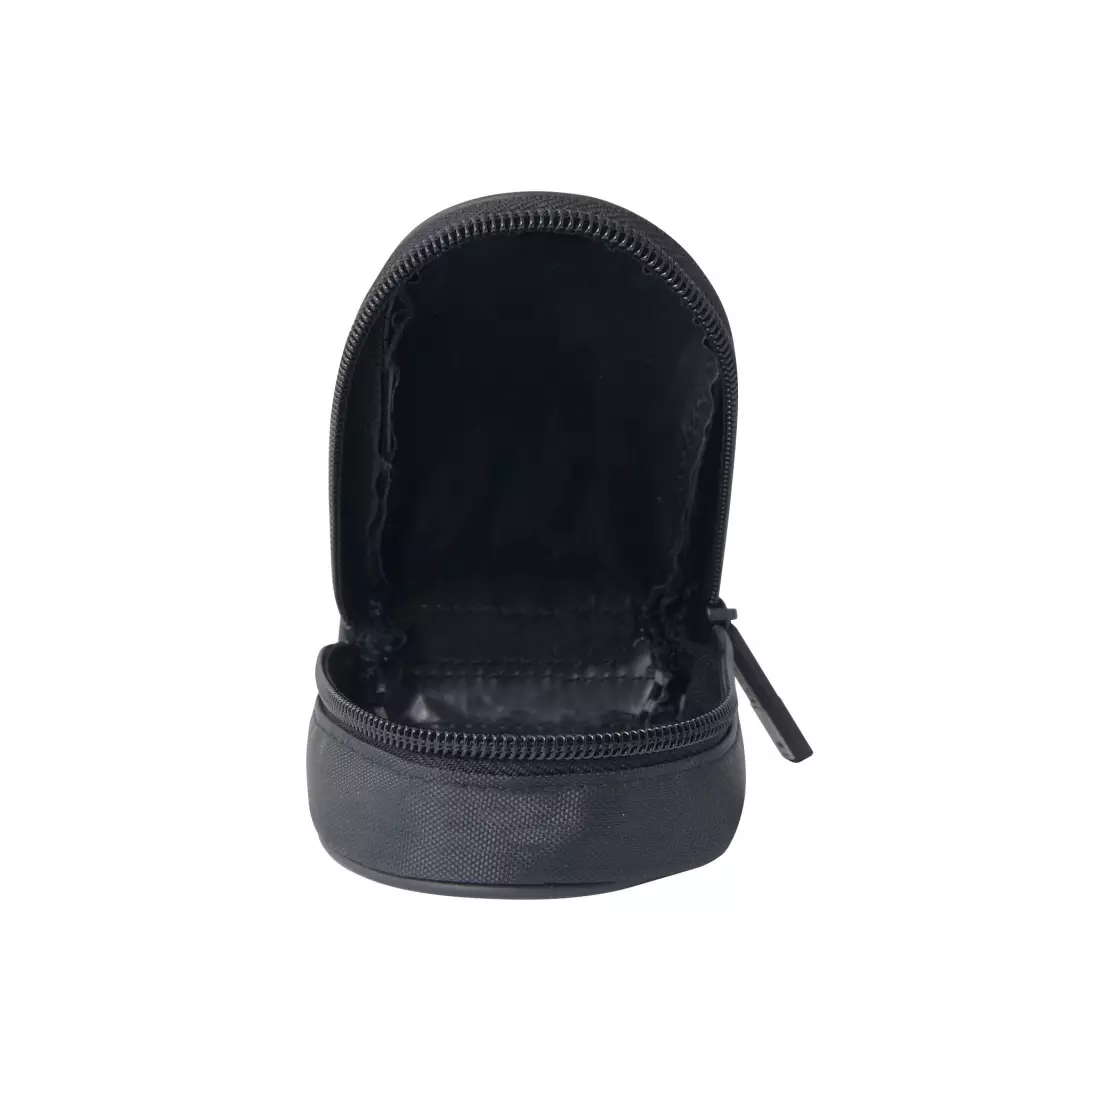 FORCE MINILIGHT Sedlová taška na suchý zips, čierna 896091